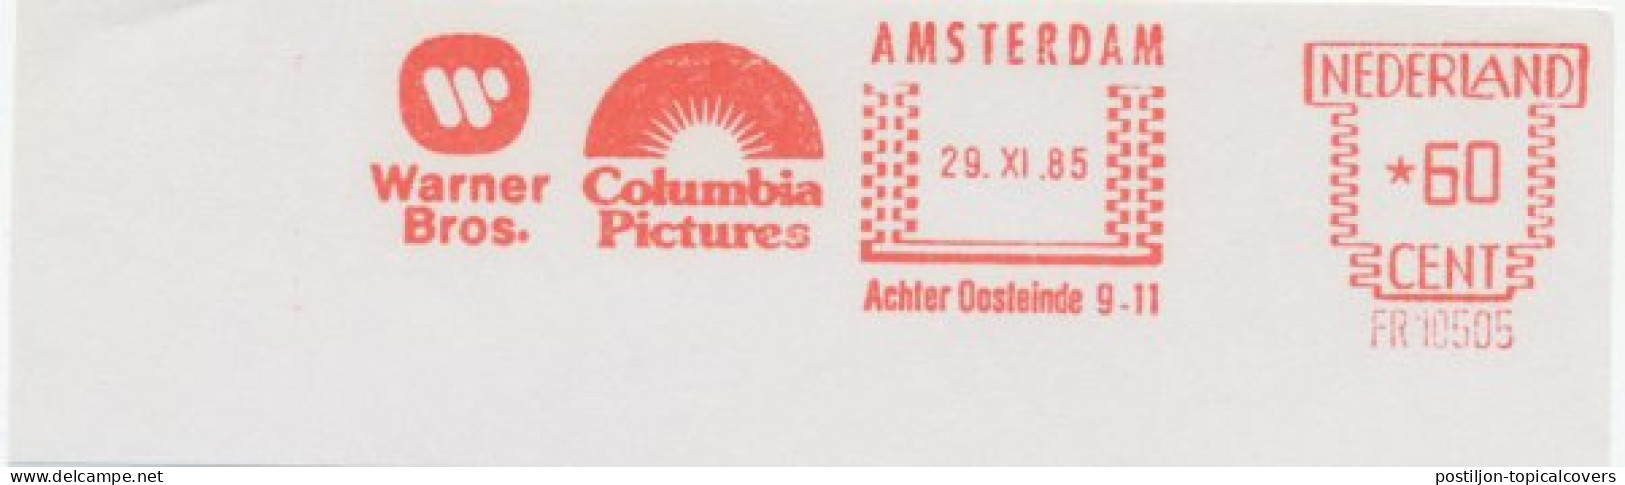 Meter Cut Netherlands 1985 Warner Bros. - Columbia Pictures - Kino